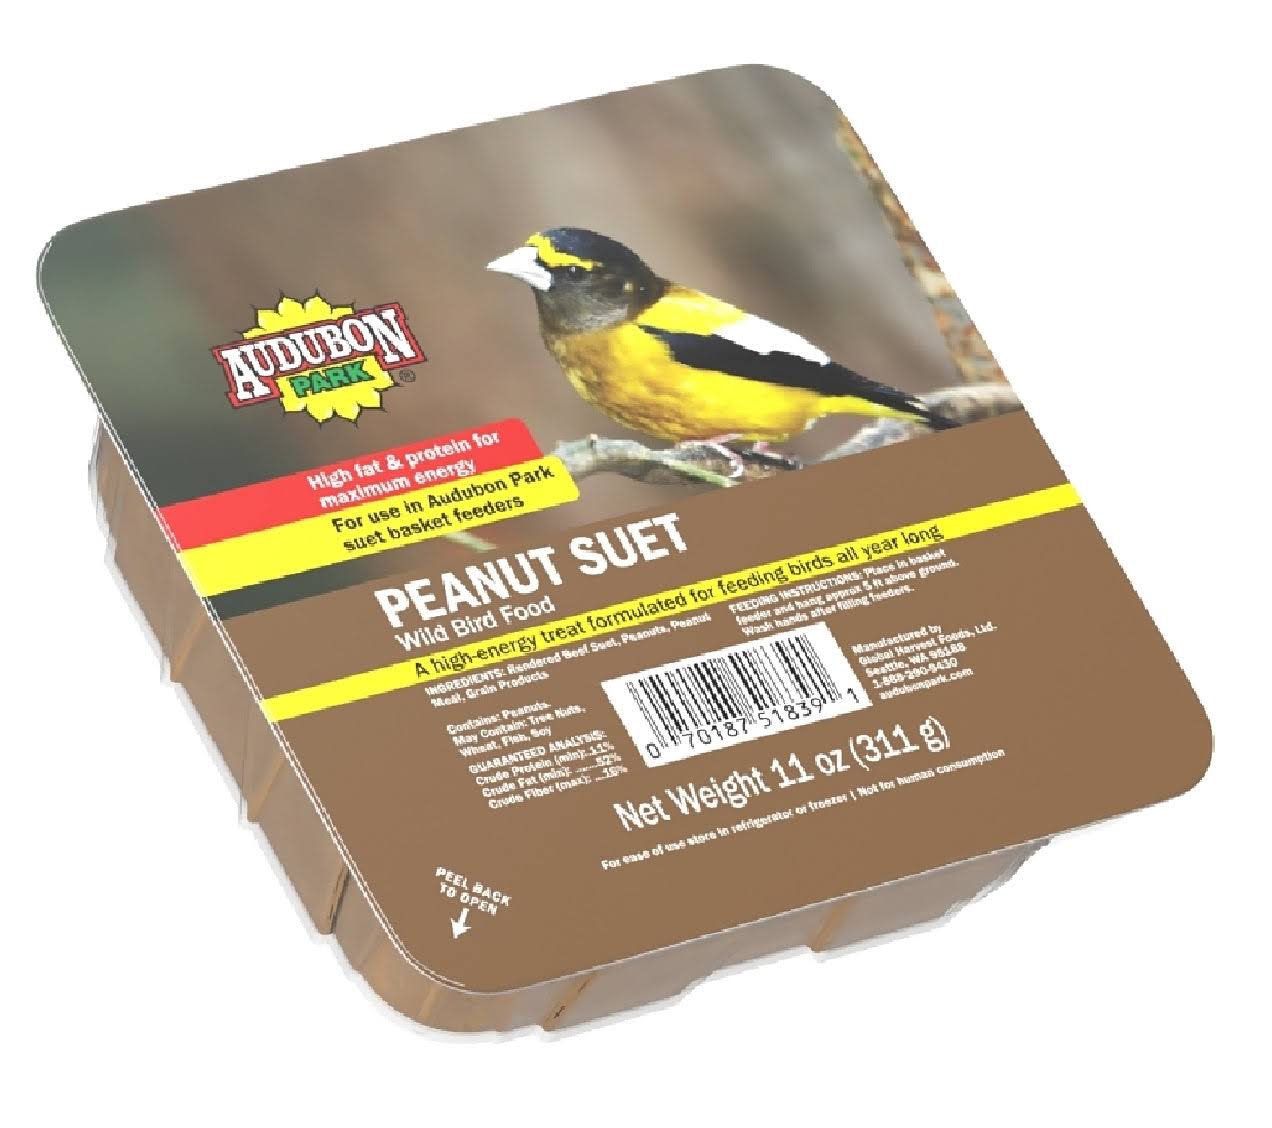 Audubon Park Wild Bird Food, Peanut Suet - 11 oz